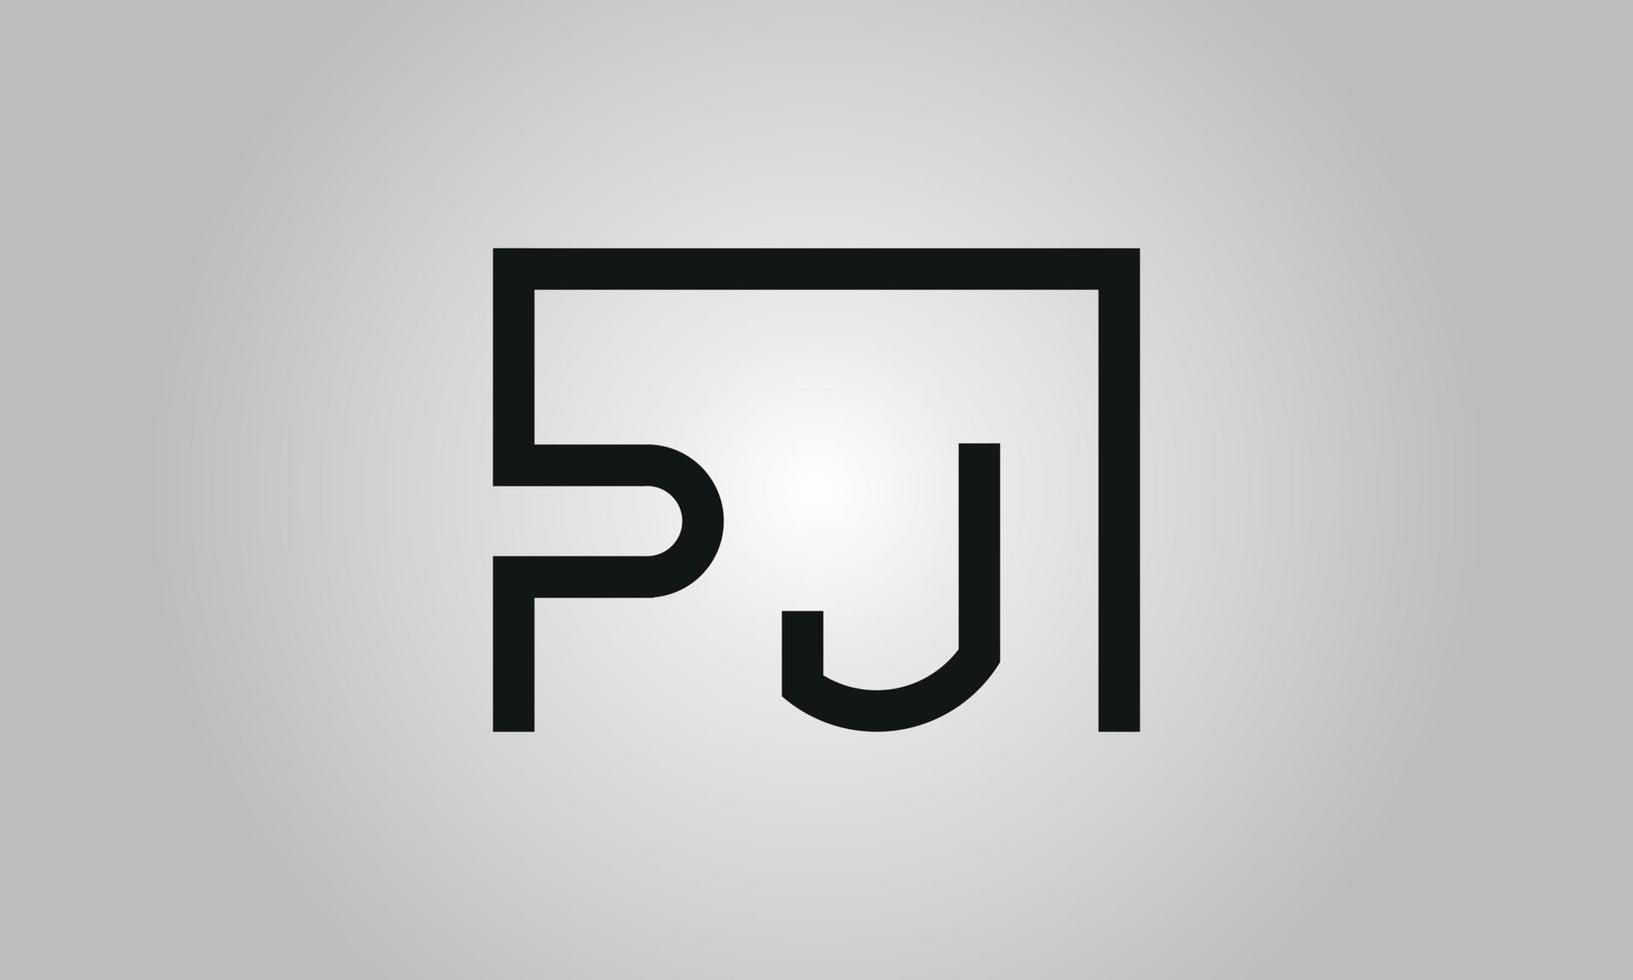 création de logo lettre pj. logo pj avec forme carrée dans le modèle vectoriel gratuit de couleurs noires.